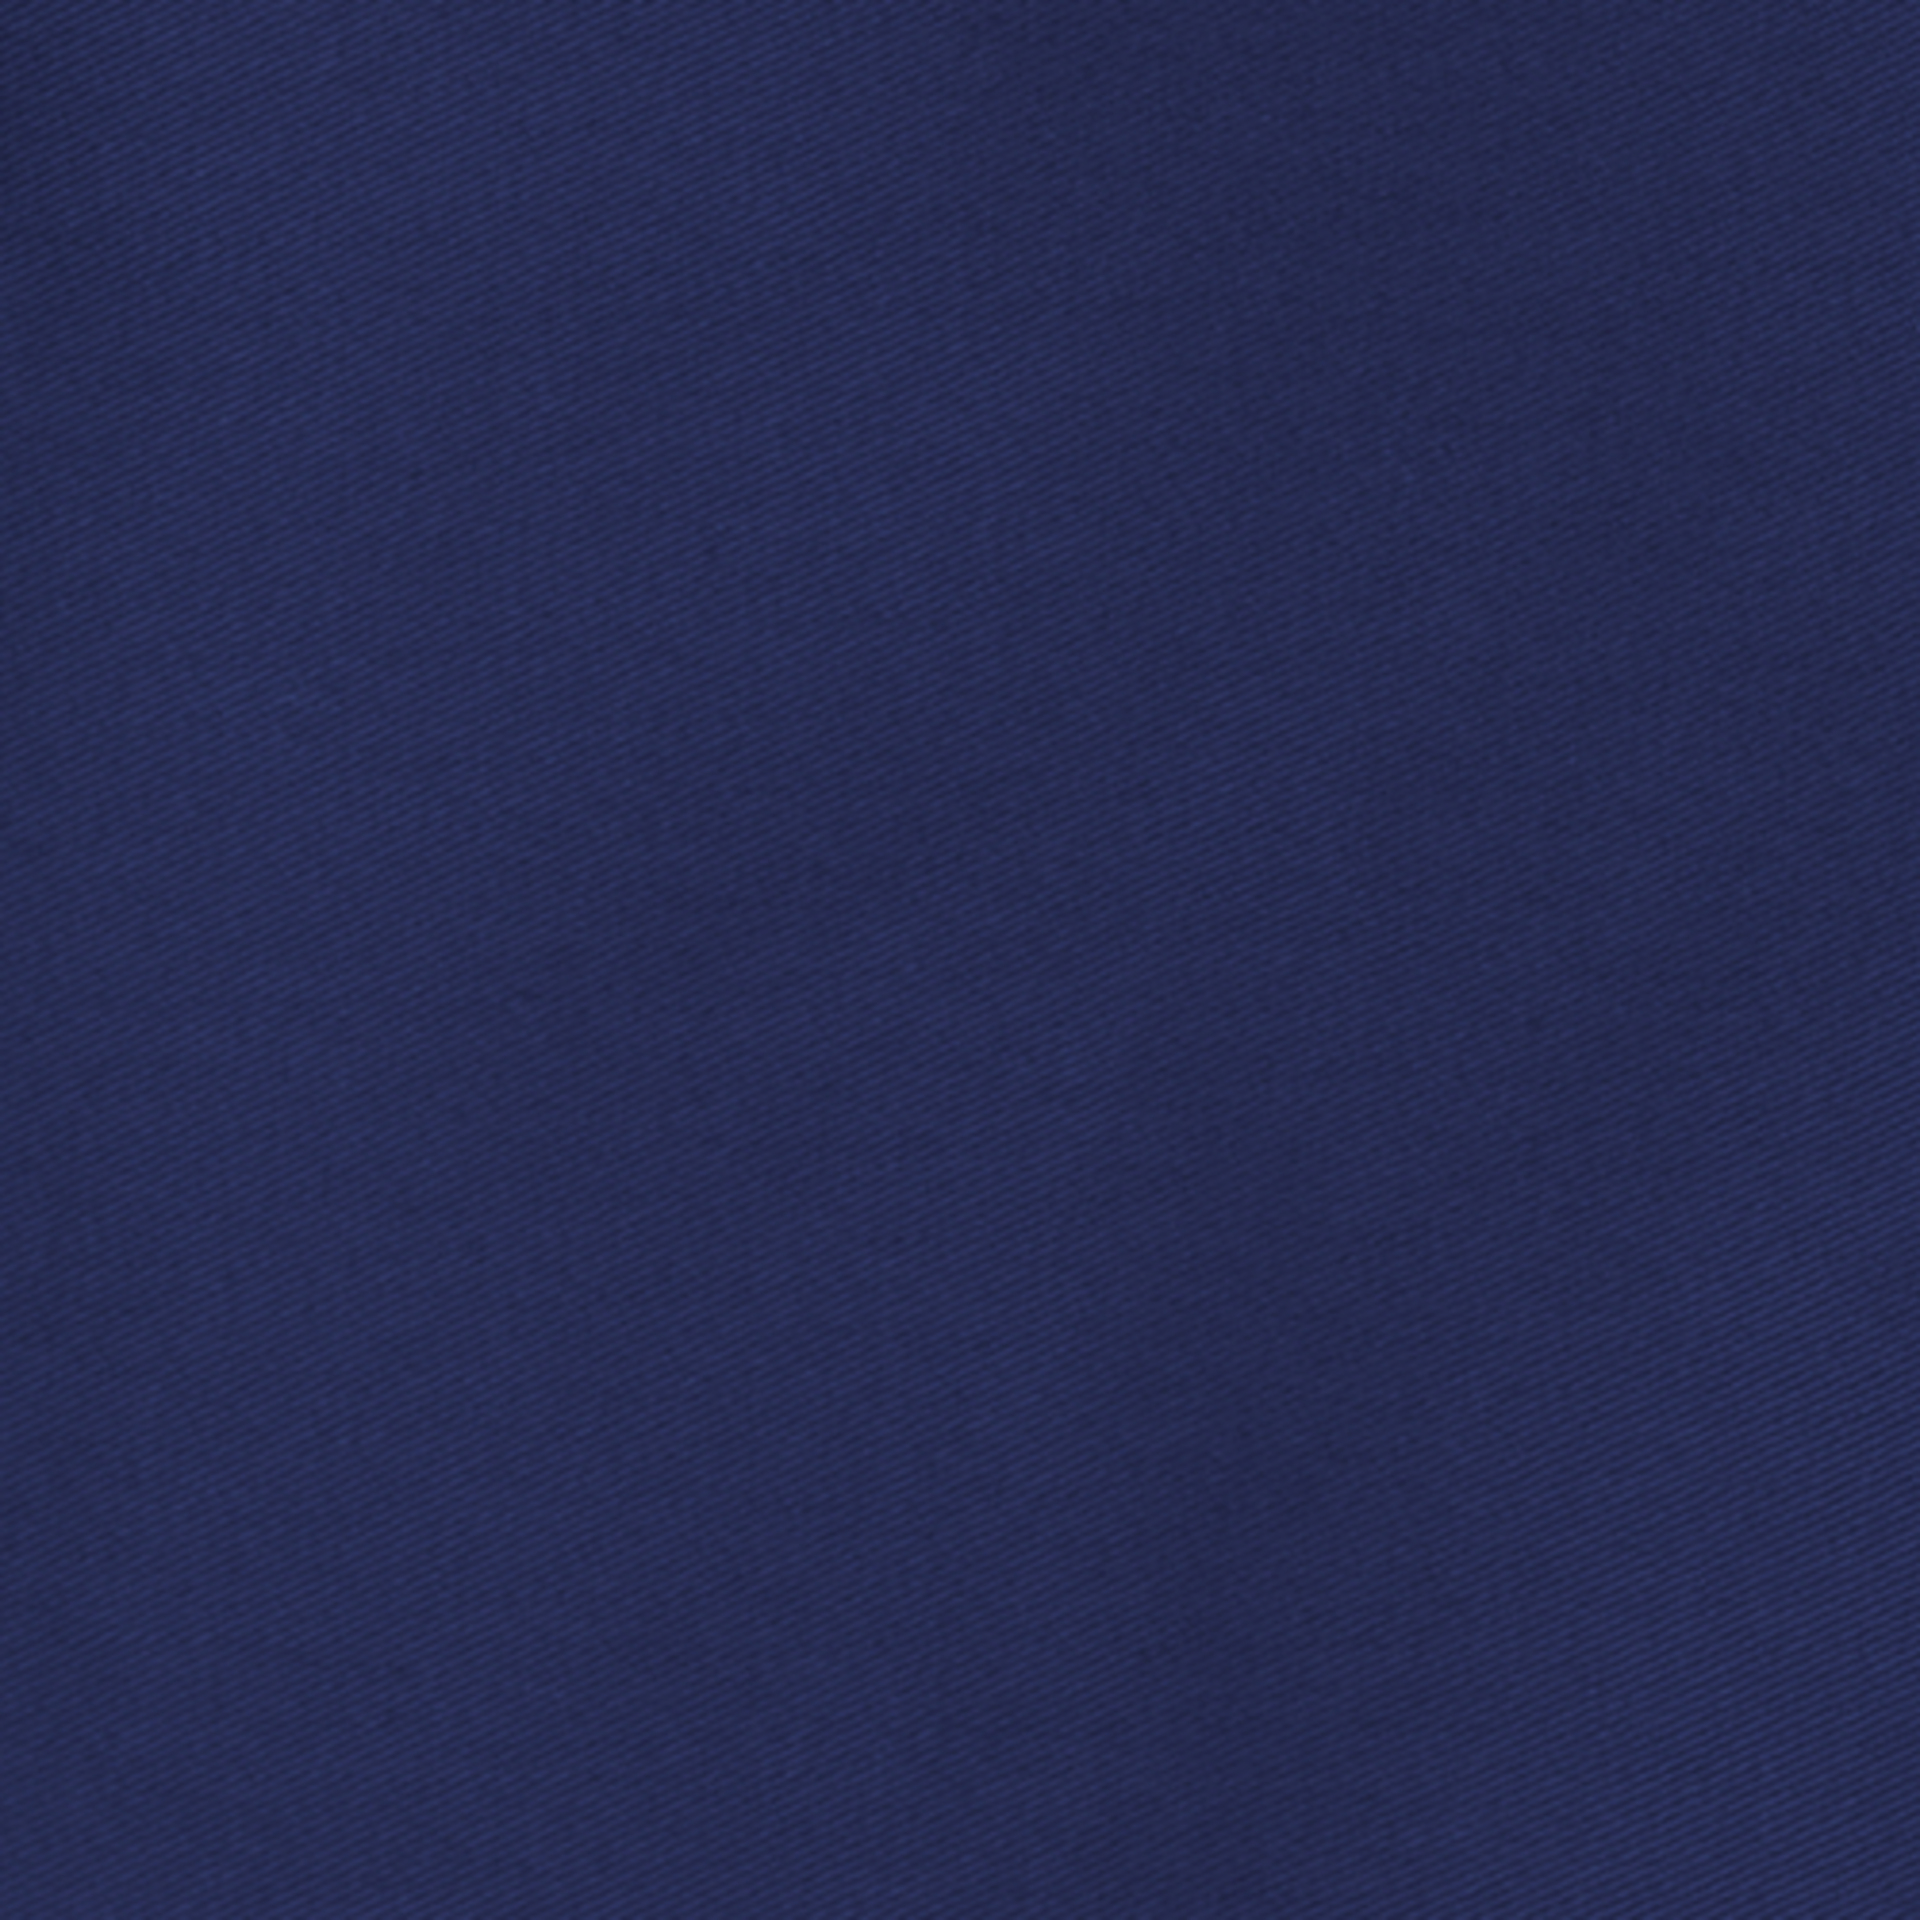 Zástěra řemeslnická s náprsenkou, pevný pásek tmavě modrá 